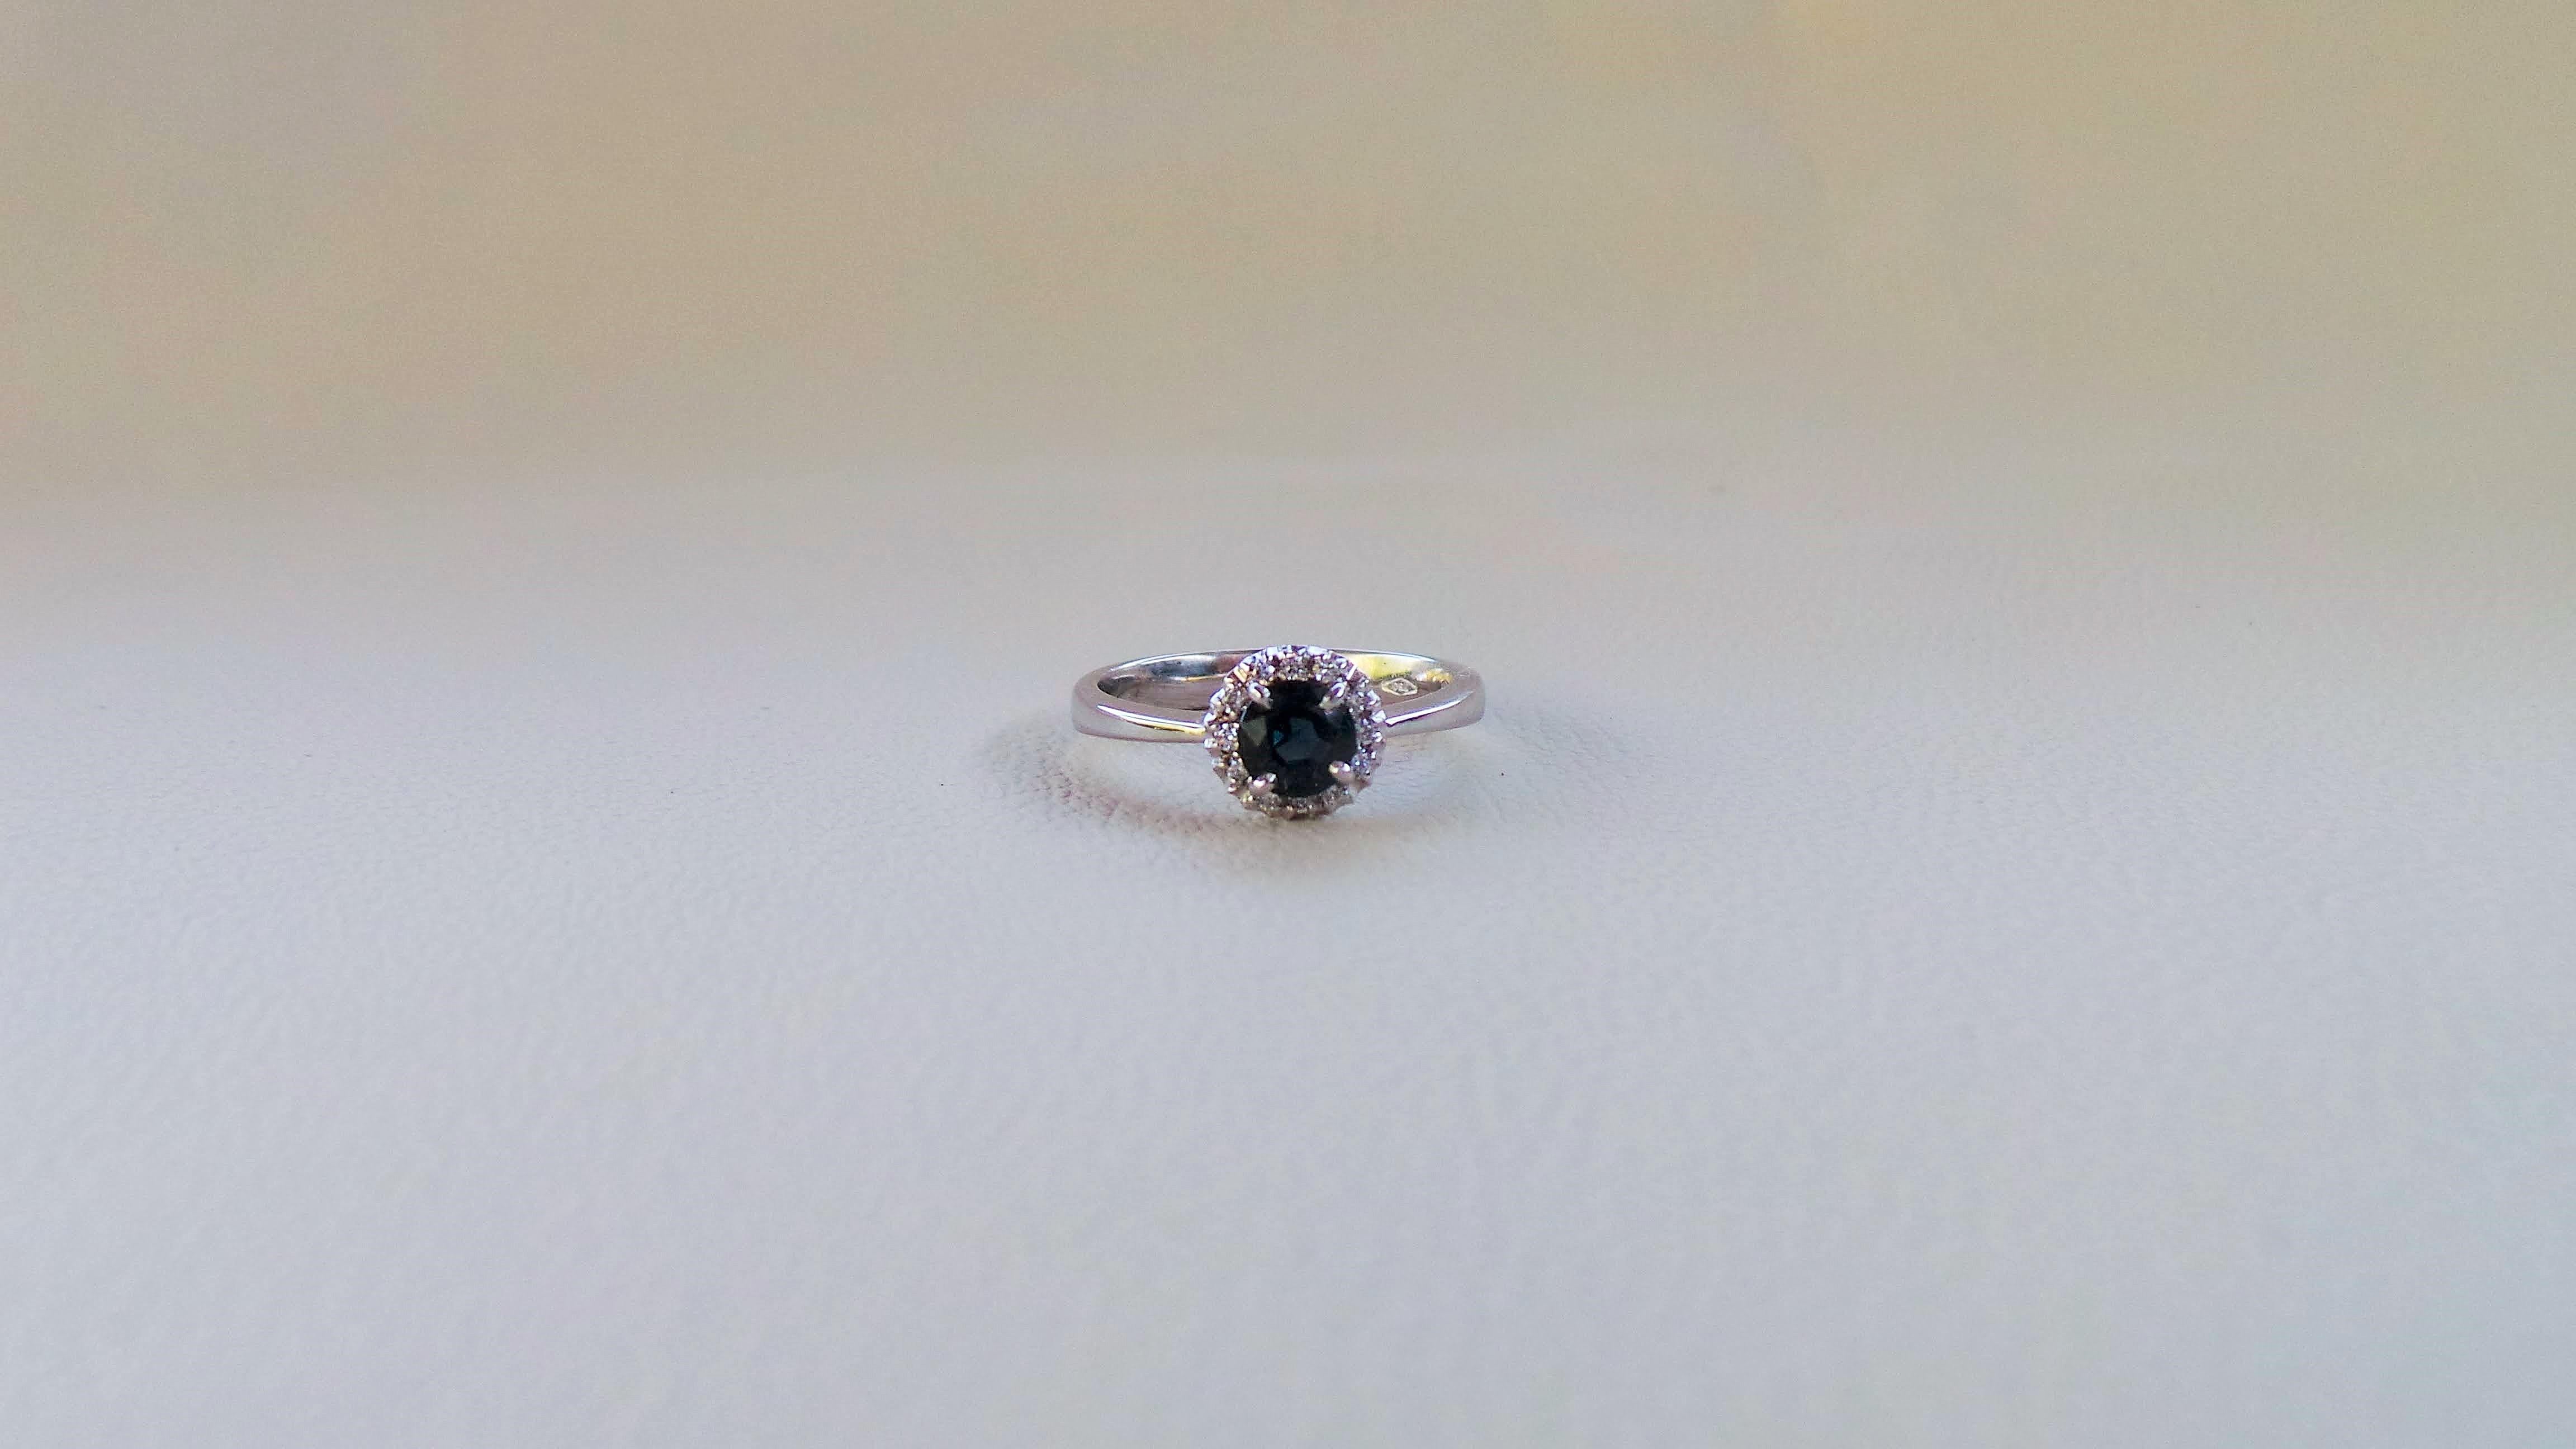 Andrea Macinai entwirft eine eigene Kollektion für Verlobungsringe  mit einem wunderschönen runden dunkelblauen Saphir und Diamanten.
Der Ring wurde nach der natürlichen Linie des Steins entworfen und gefertigt.
0.6 Karat runder blauer Saphir,